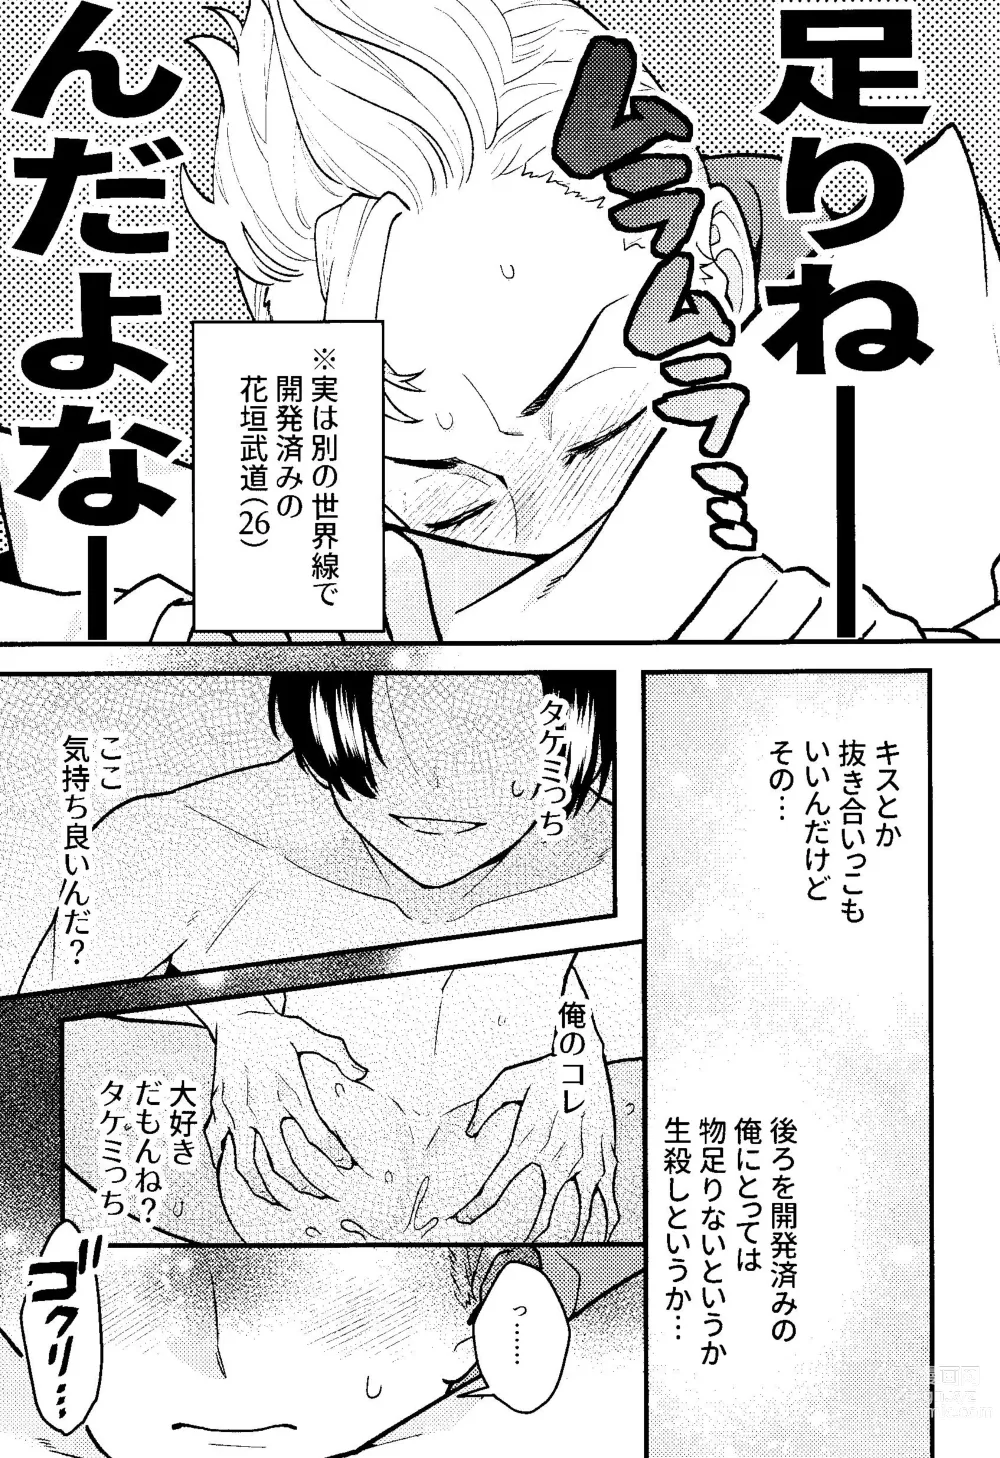 Page 6 of doujinshi Jitsuwa kaihatsu sumidesu